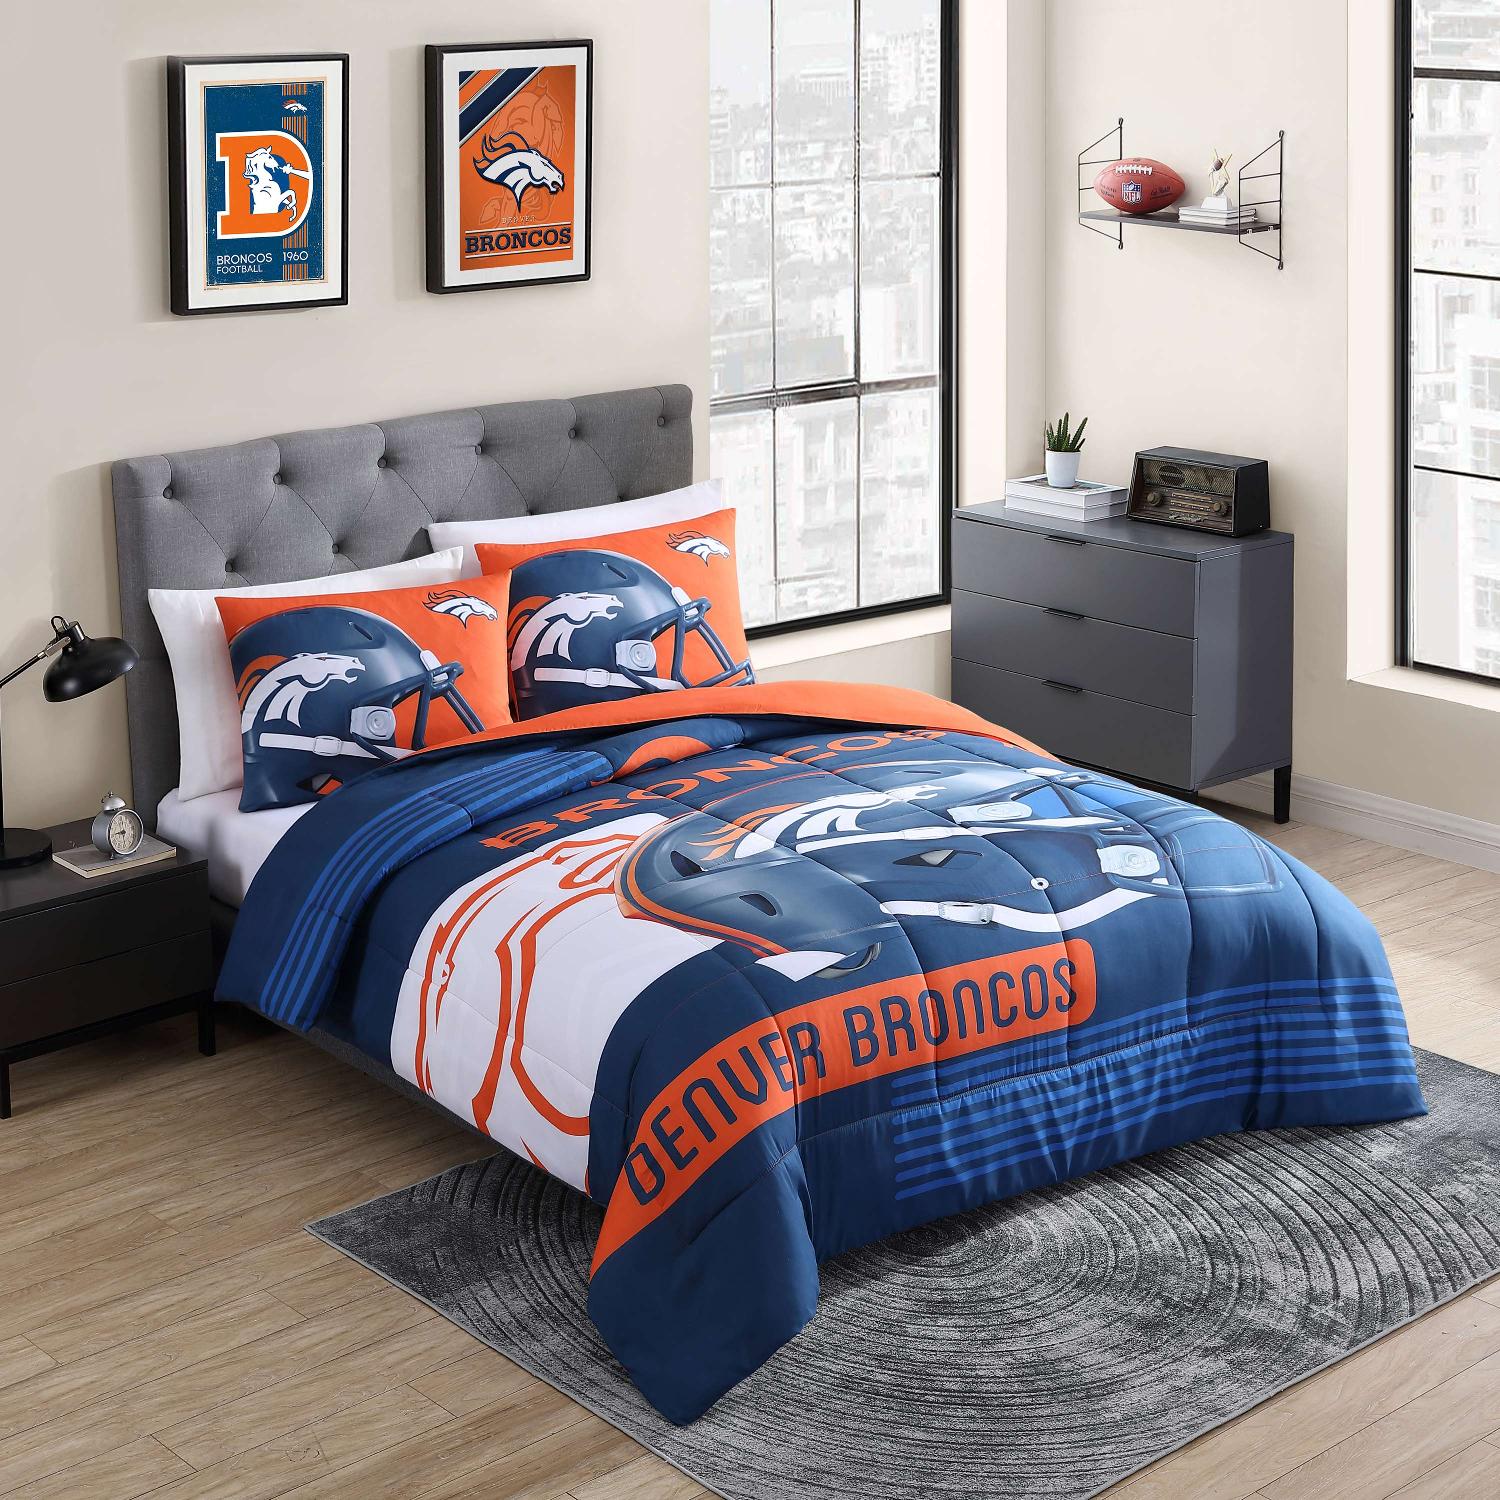 Denver Broncos NFL Officially Licensed 3-Piece Comforter Set - Bed